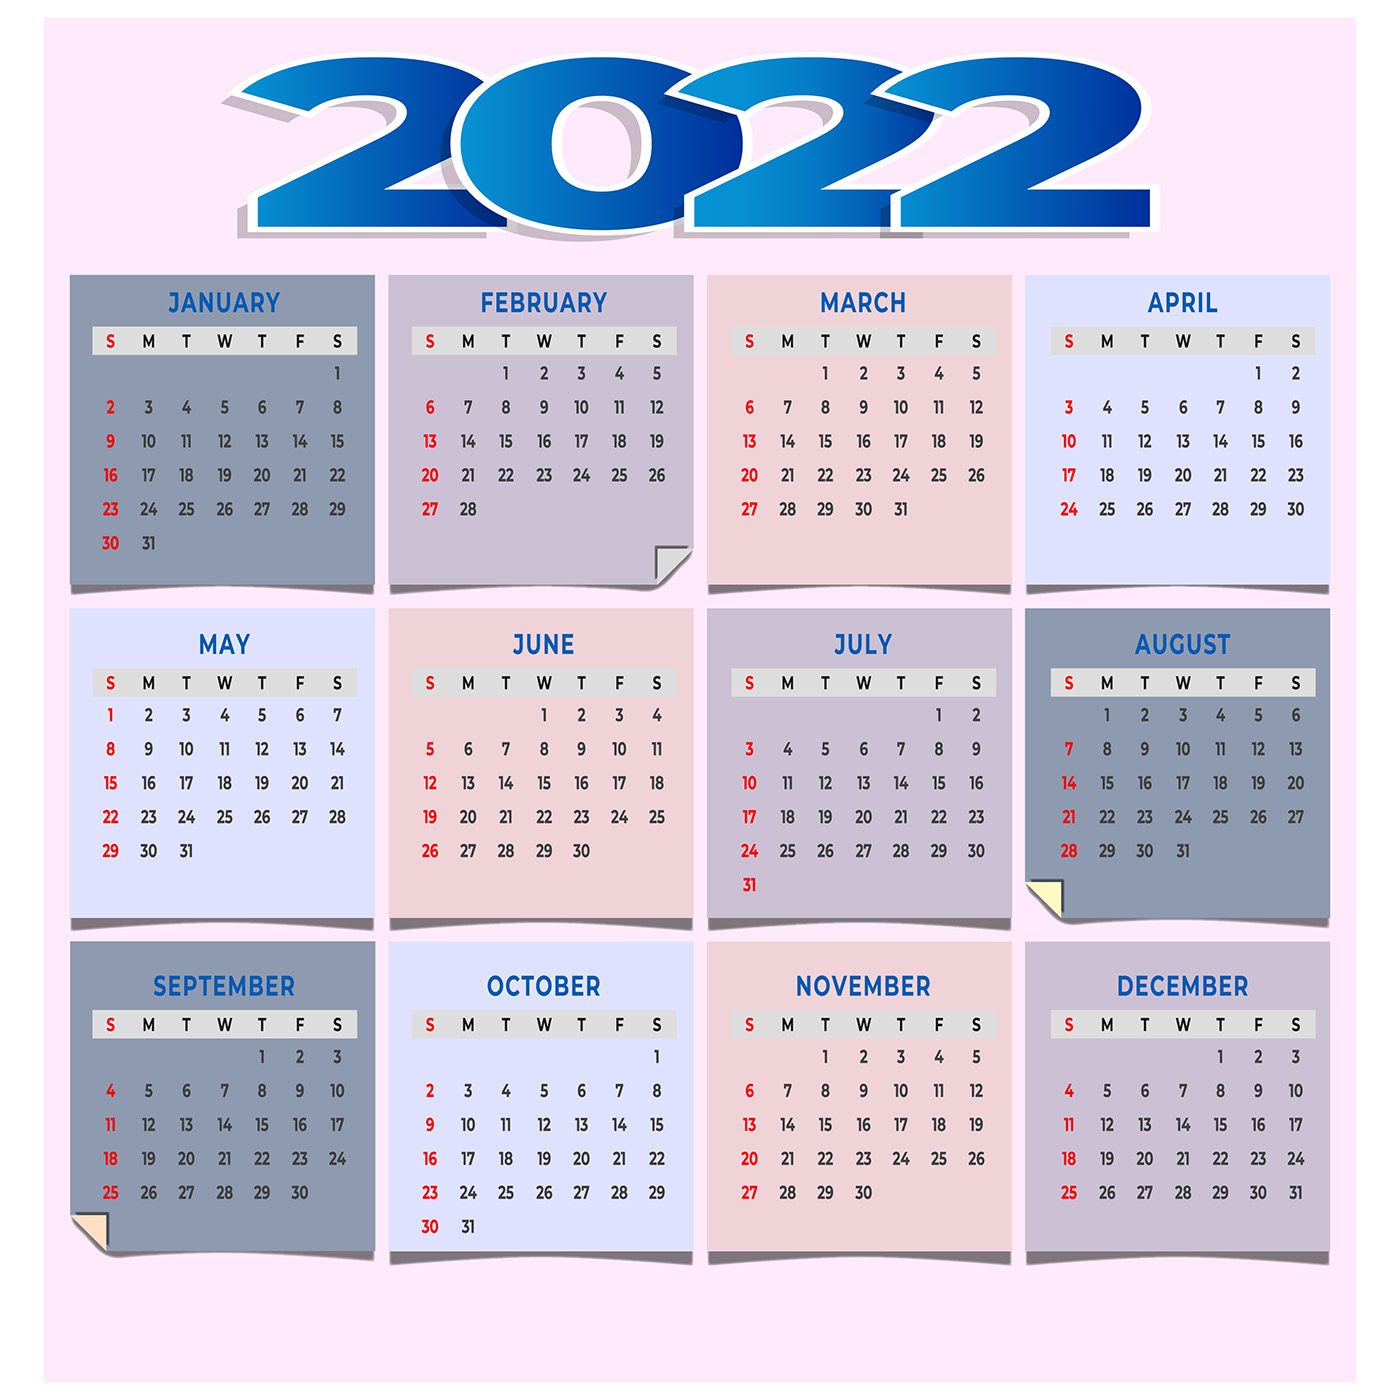 calendar 2022 design pdf